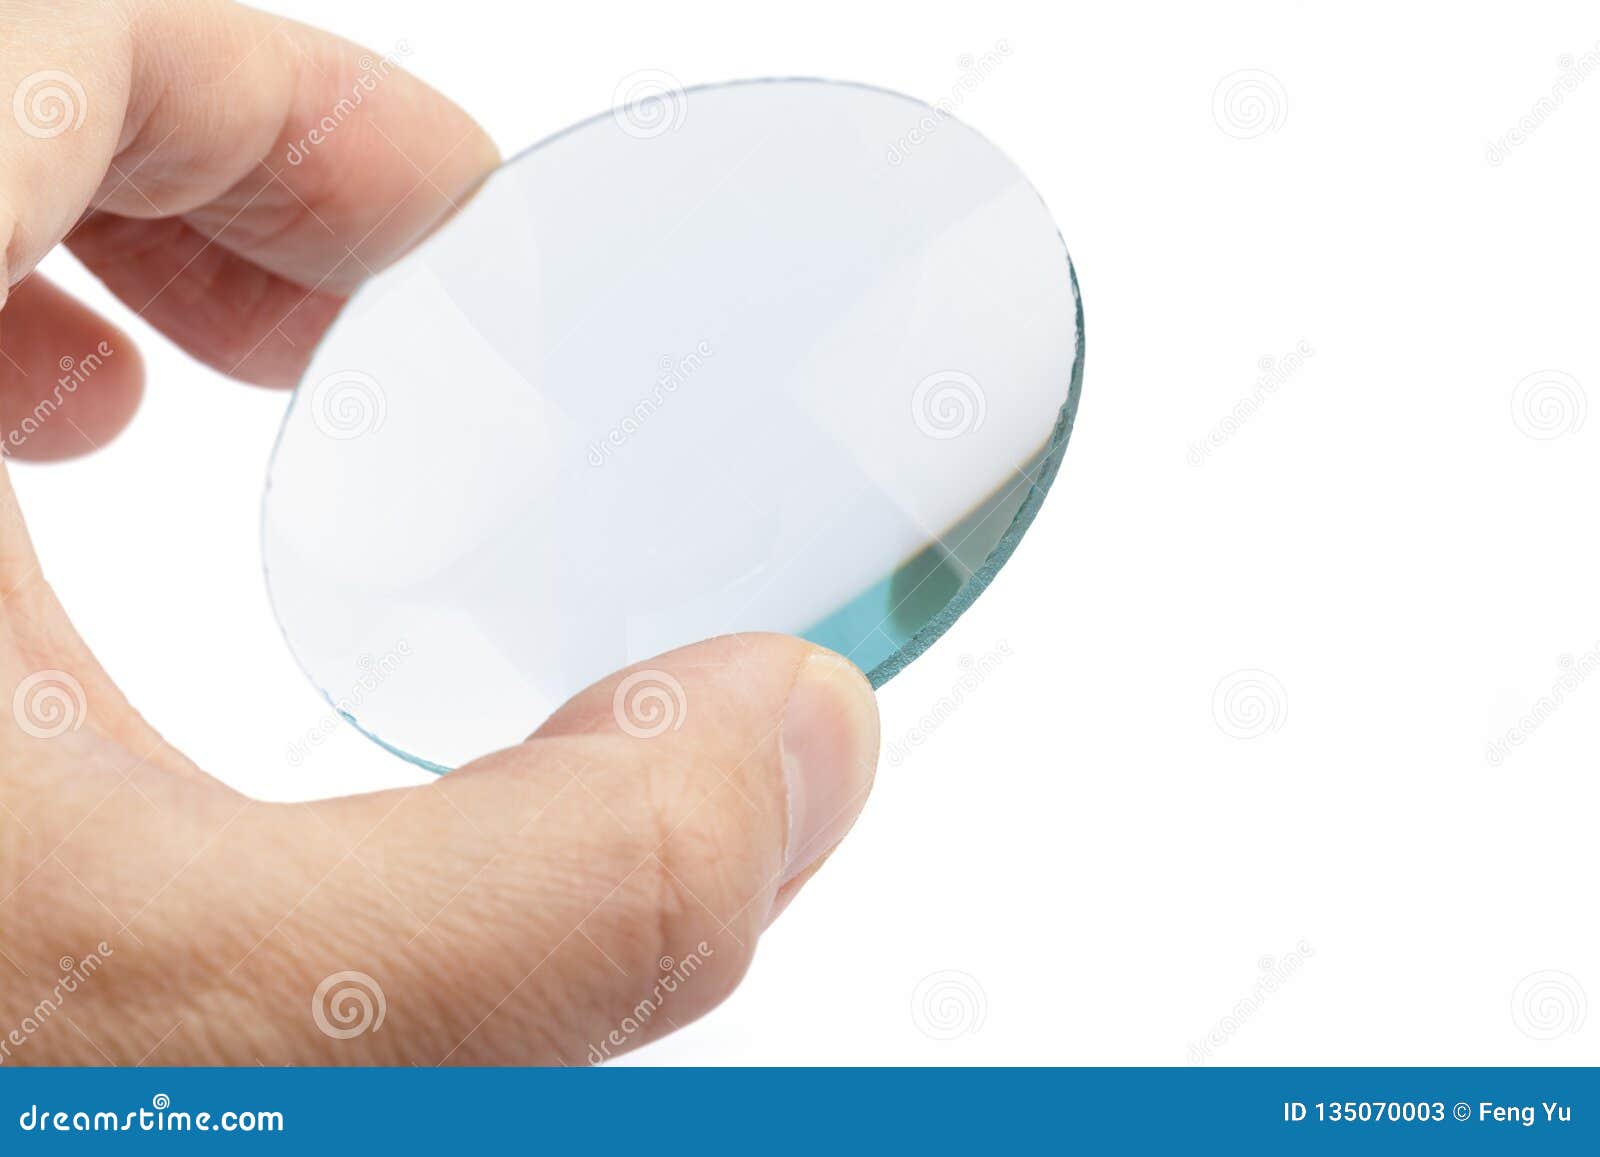 a convex lens